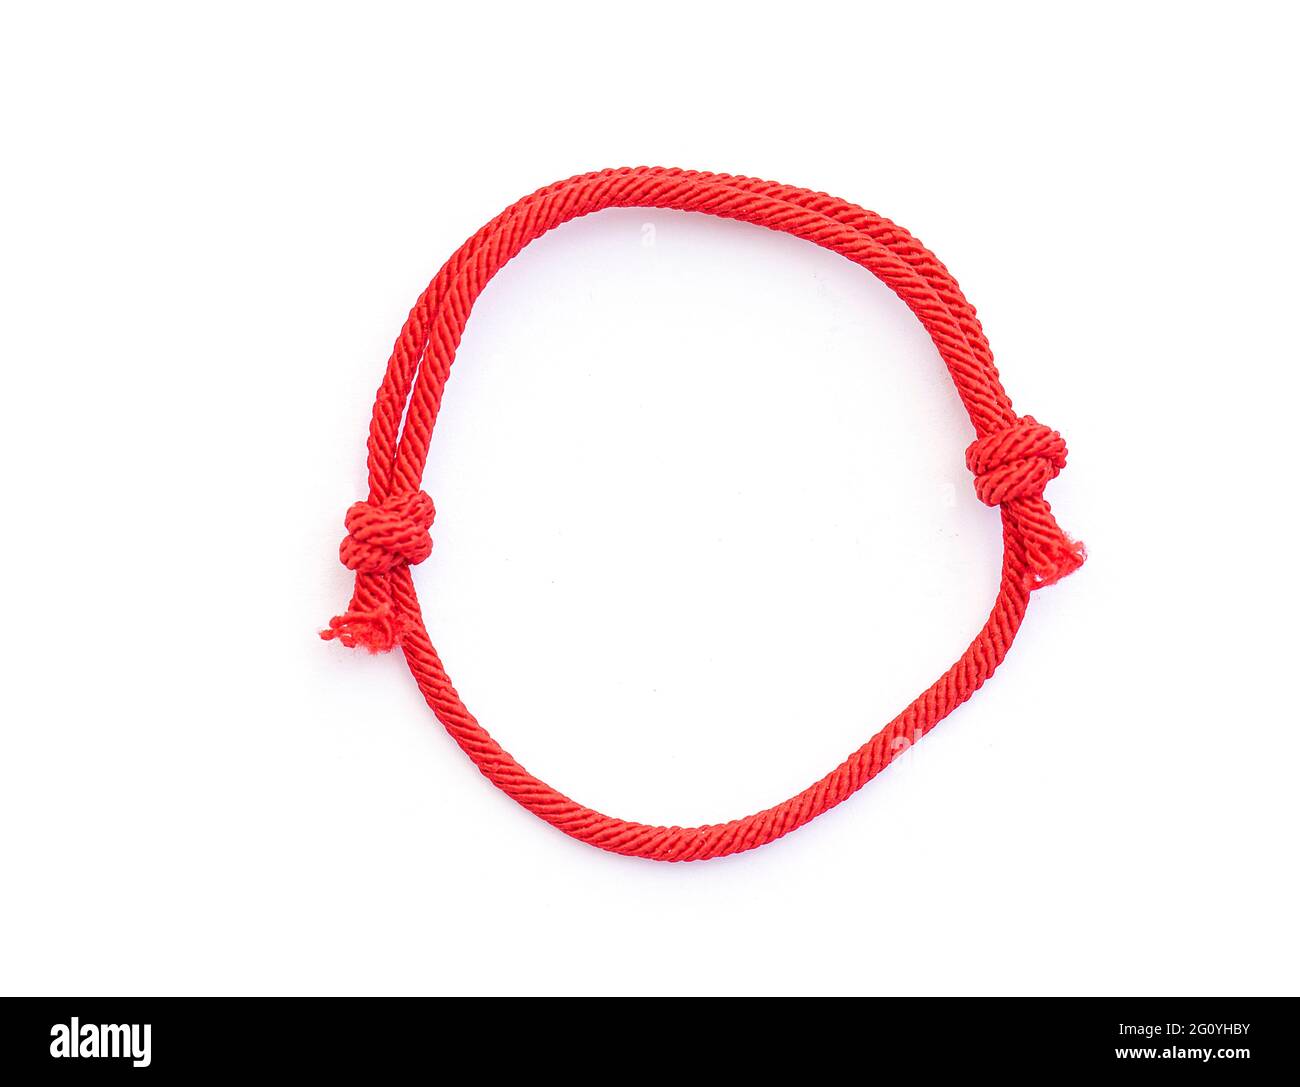 Fil rouge, corde en tant qu'amulette pour poignet isolé sur blanc. Bracelet rouge à noeuds. Vue de dessus. Banque D'Images